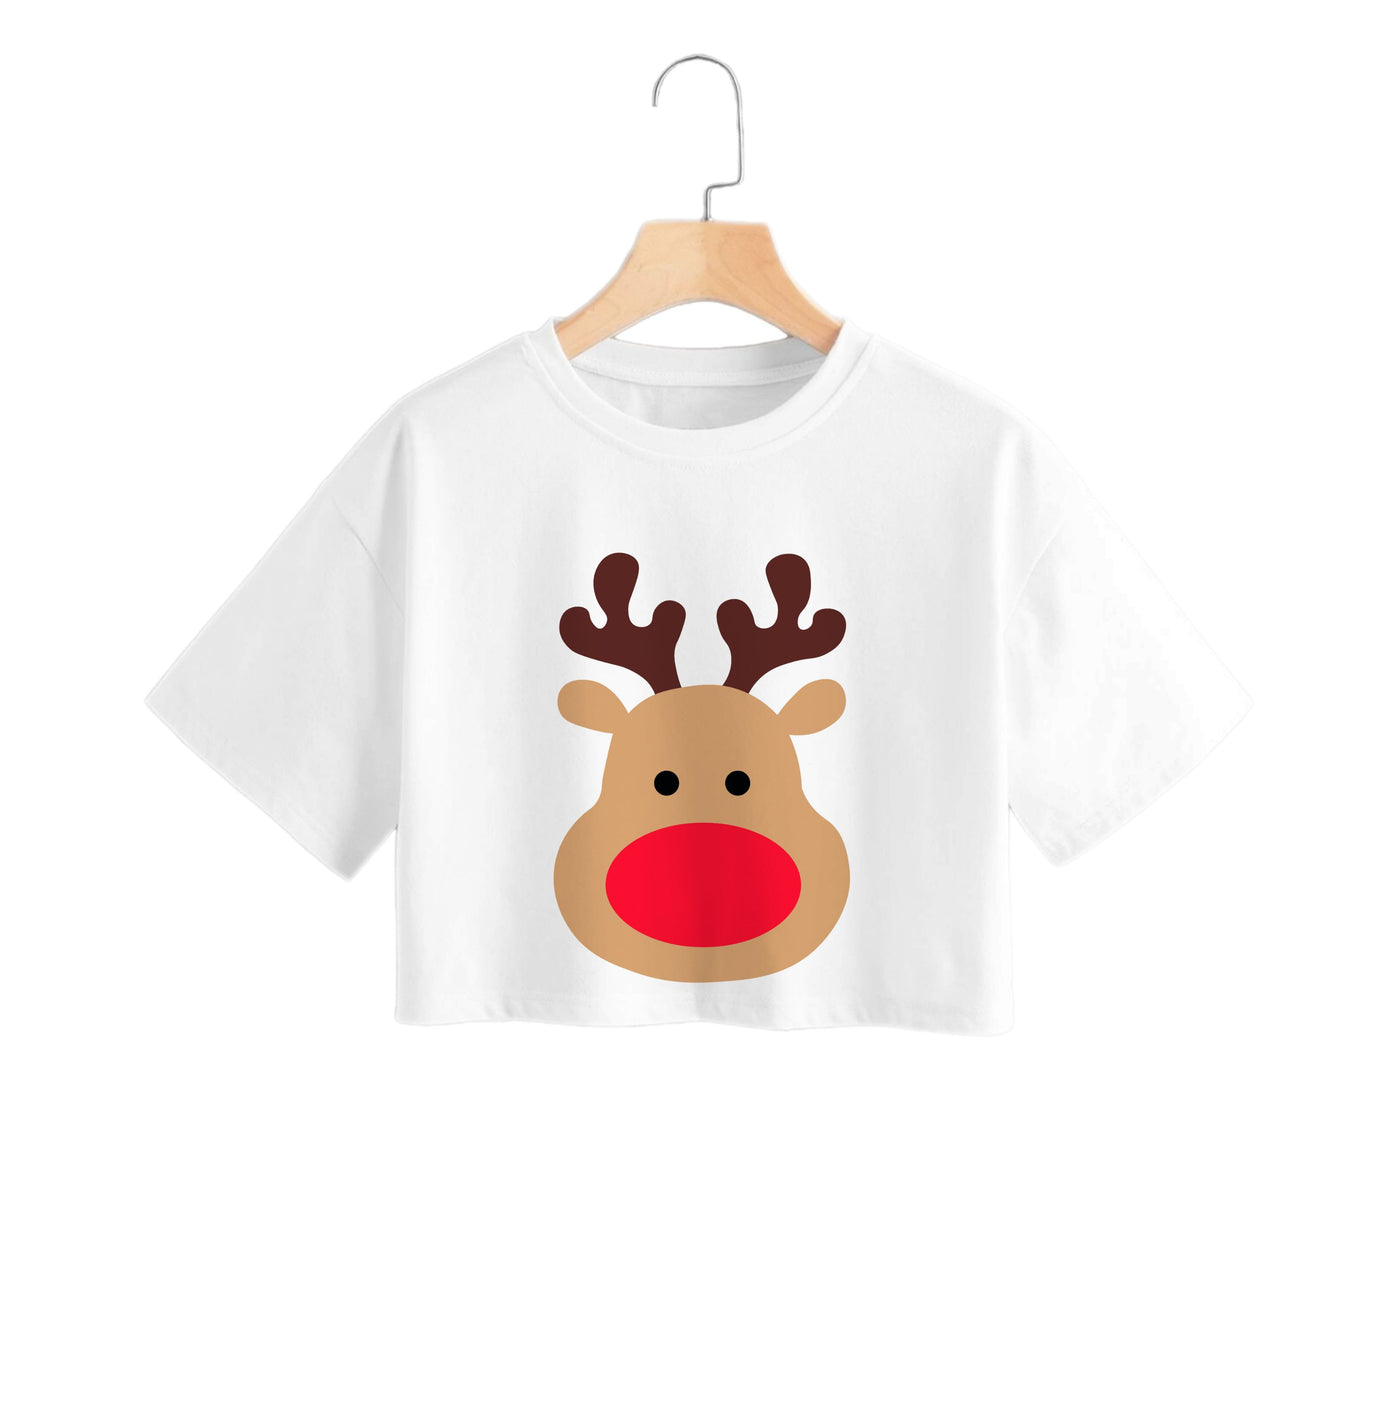 Rudolph Face - Christmas Crop Top